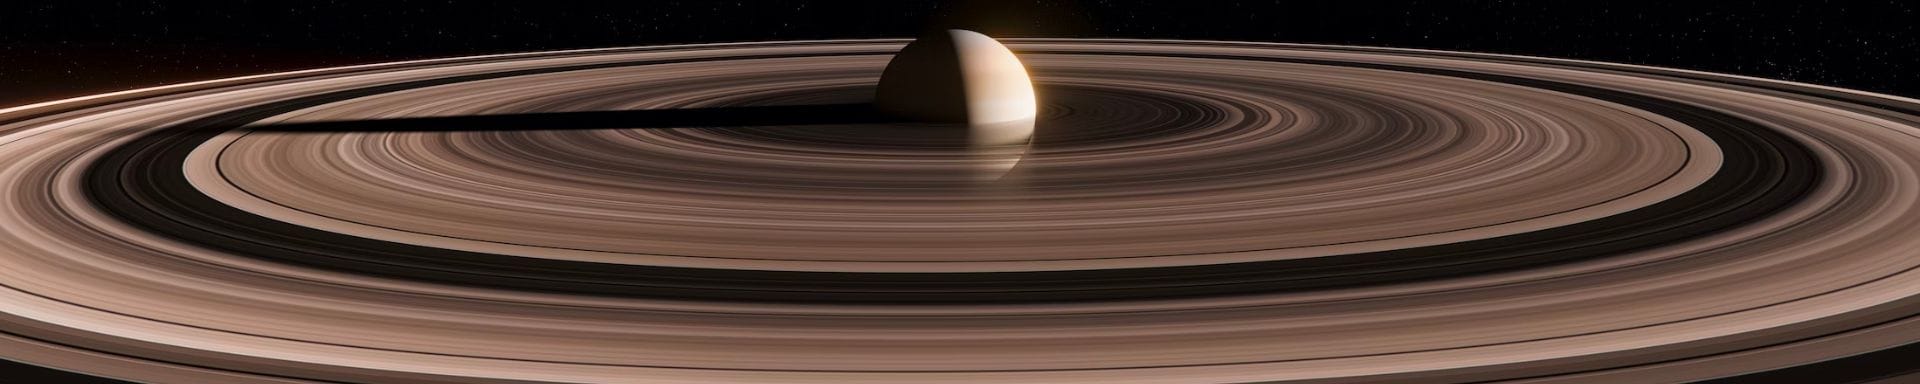 Tudo sobre os Anéis de Saturno